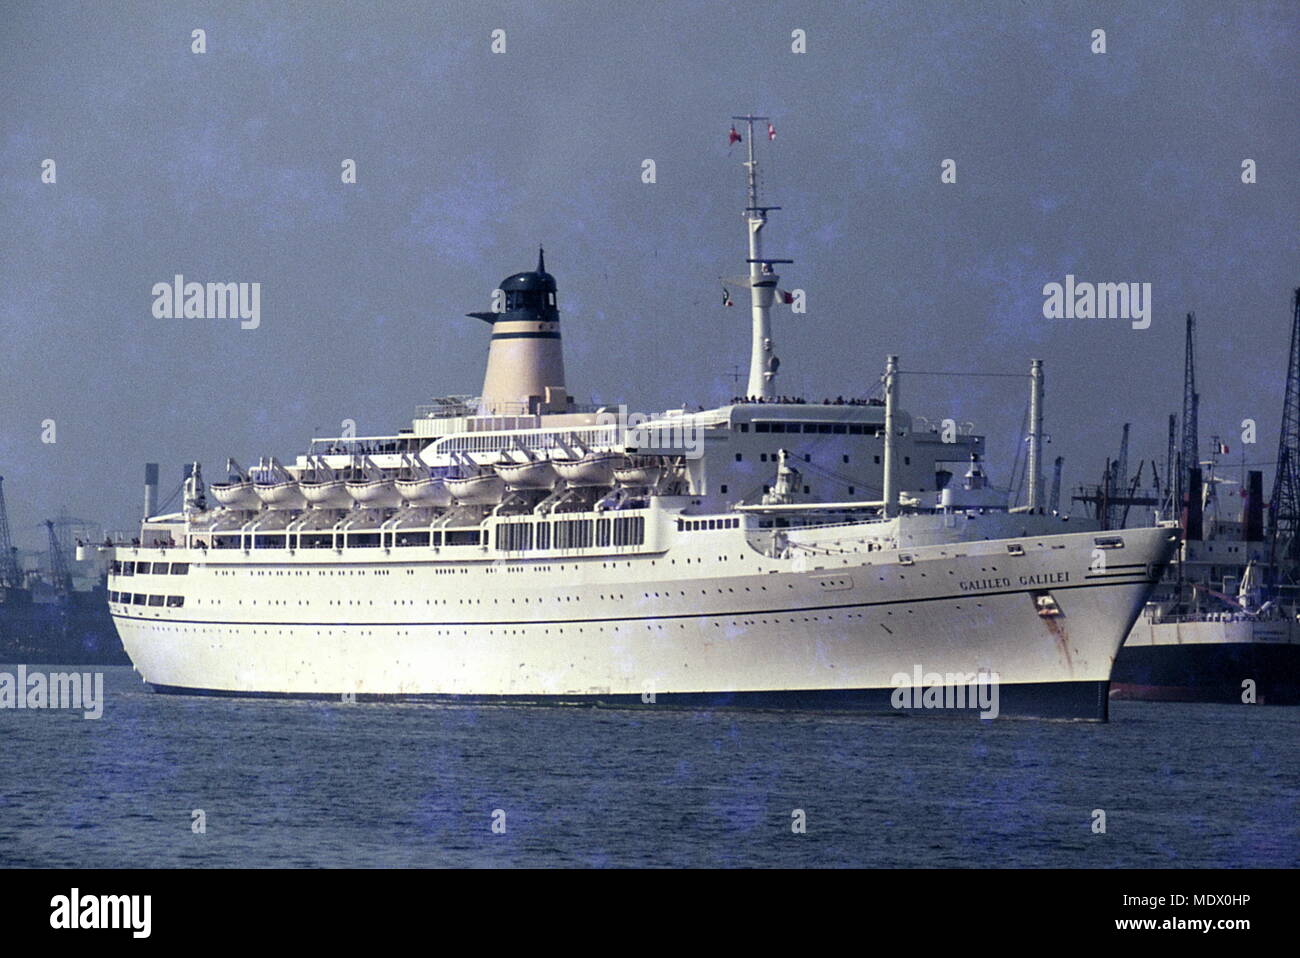 AJAXNETPHOTO. 60er Jahre (ca.). SOUTHAMPTON, England. - SS GALILEO GALILEI WAR EIN OZEAN PASSAGIERSCHIFF gebaut 1963 von CANTIERI RIUNITI DELL'Adriatico, Monfalcone, ITALIEN FÜR LLOYD TRIESTINO IN ITALIEN - AUSTRALIEN SERVICE. Foto: VIV TOWNLEY/AJAX REF: 22412_2_2 Stockfoto